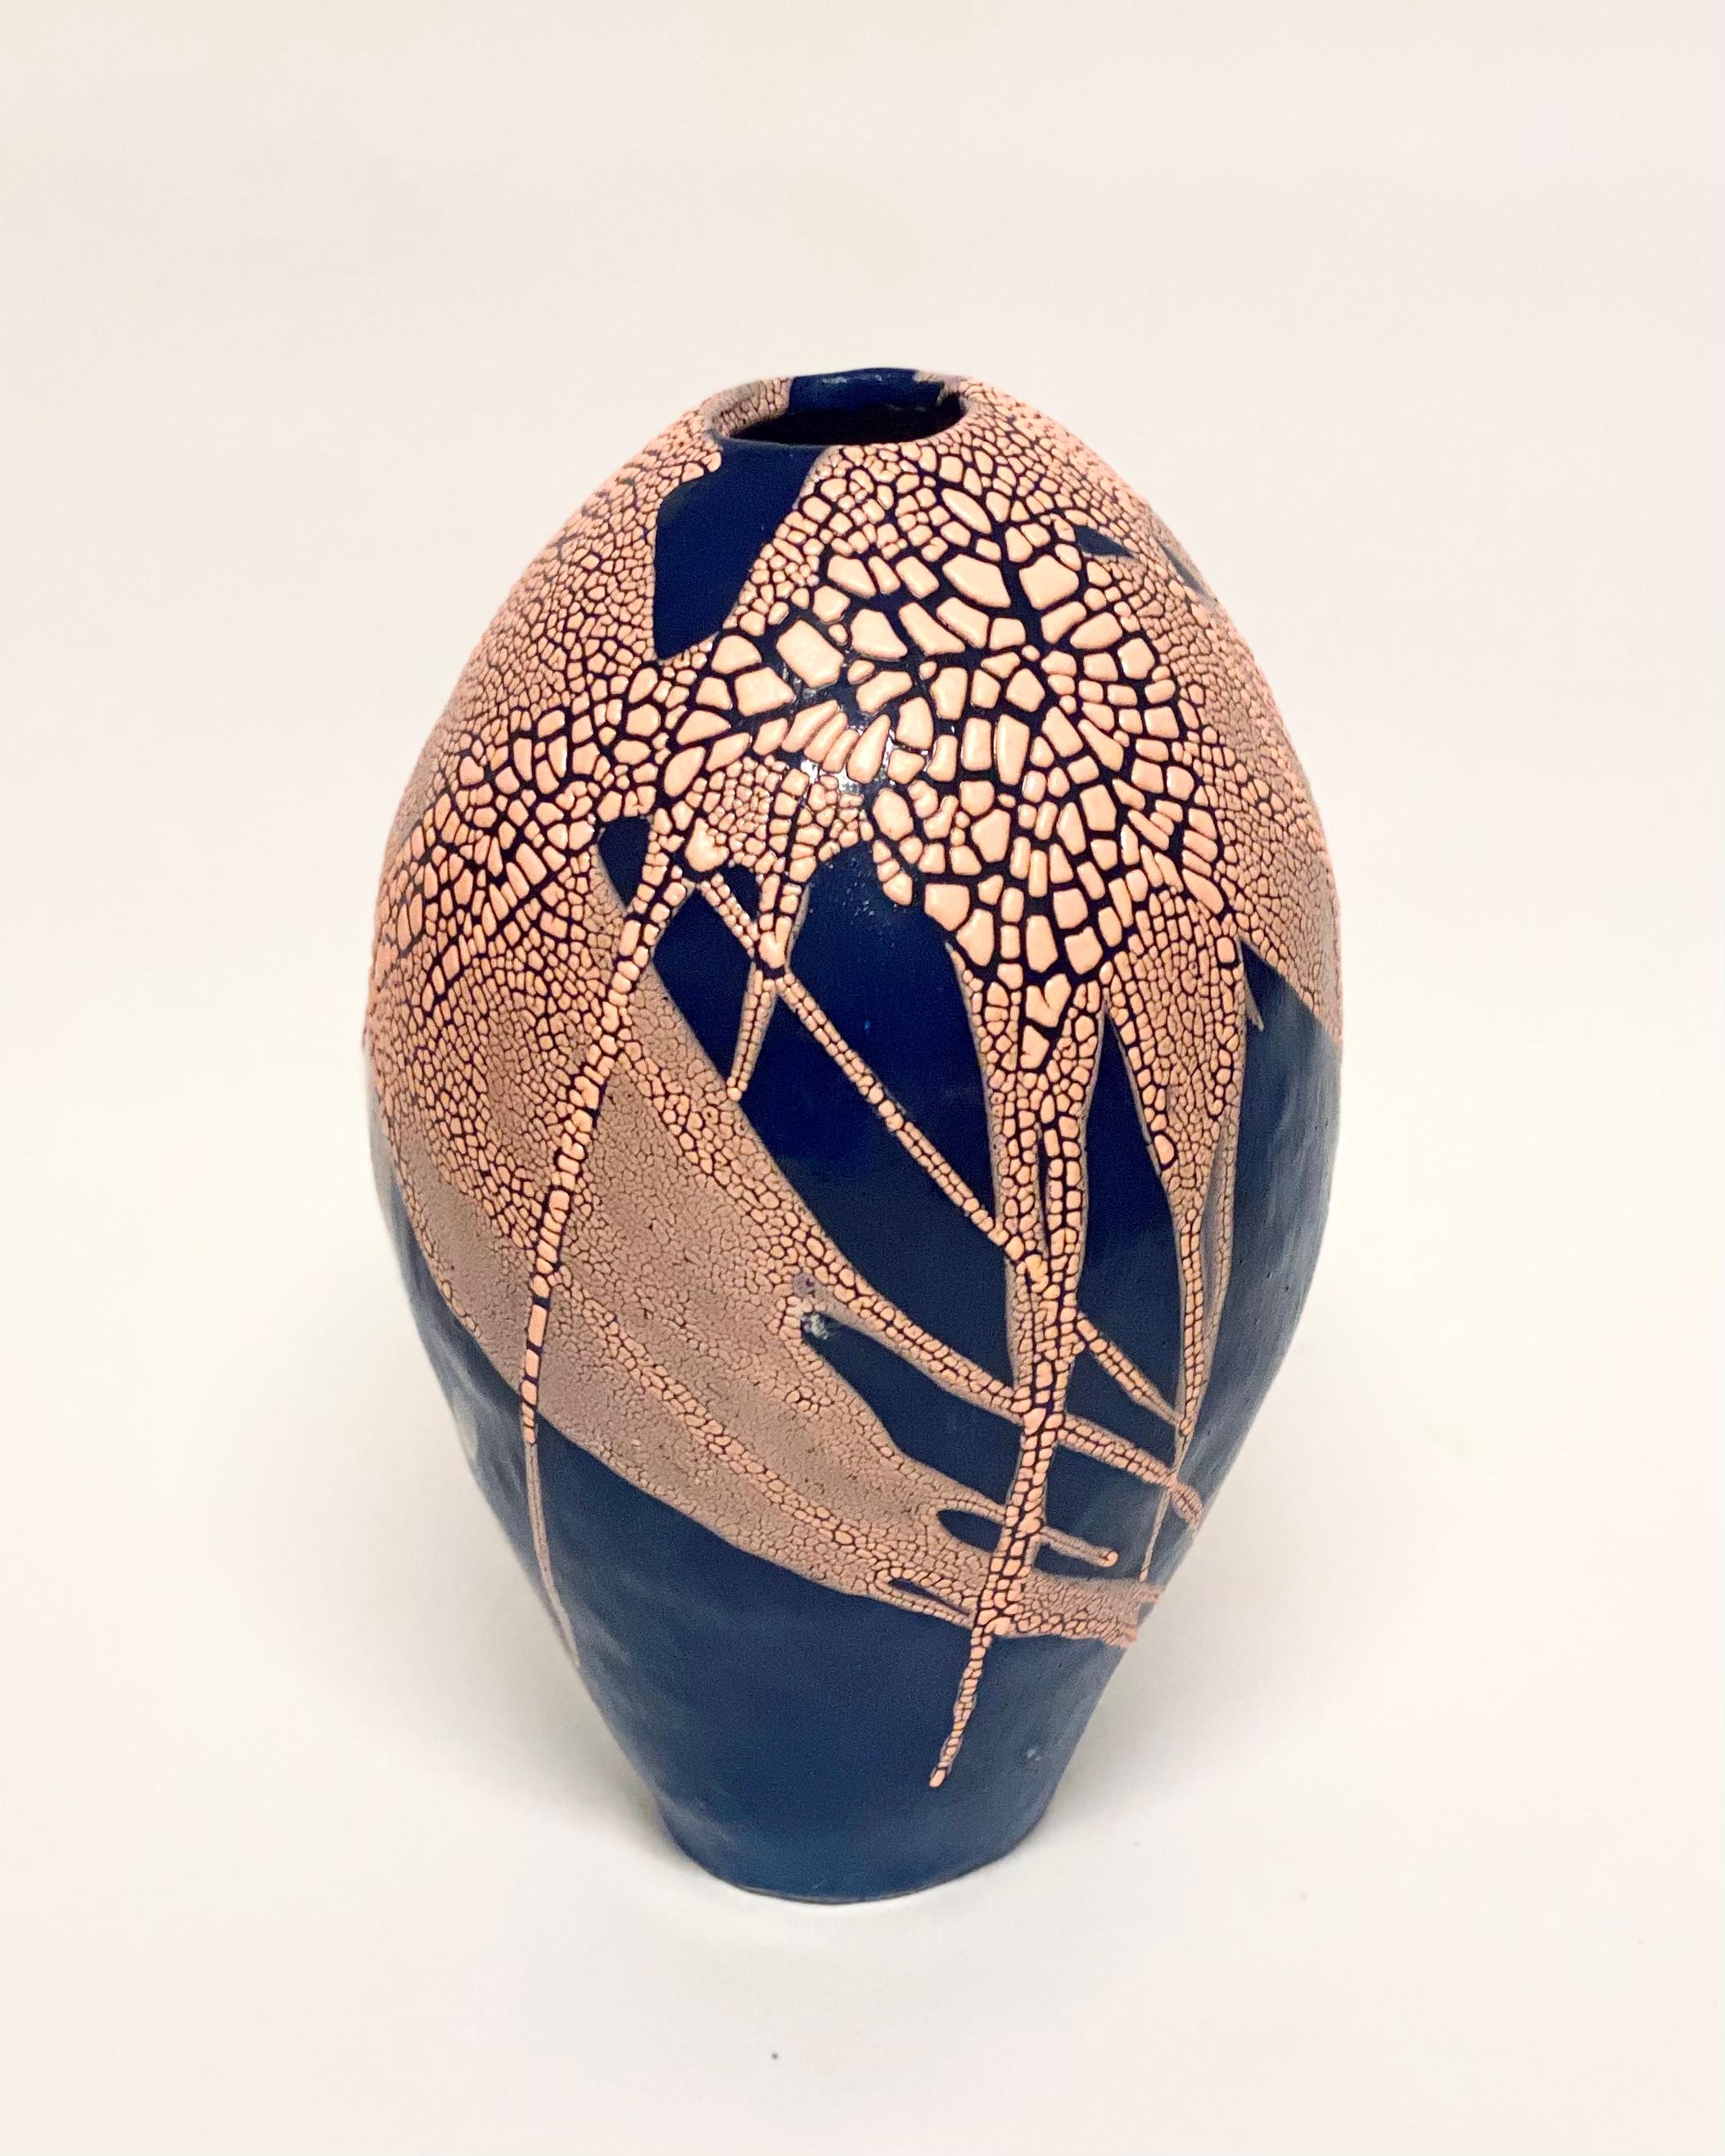 Blau-rosa Drachenei-Vase von Astrid Öhman
Handgefertigt
Abmessungen: D 22 x H 36 cm
MATERIALIEN: Keramik, Steingut, von Hand modelliert, glasiert und bei hoher Temperatur gebrannt.

Keramiken von Astrid Öhman. Jedes Stück ist handgefertigt und